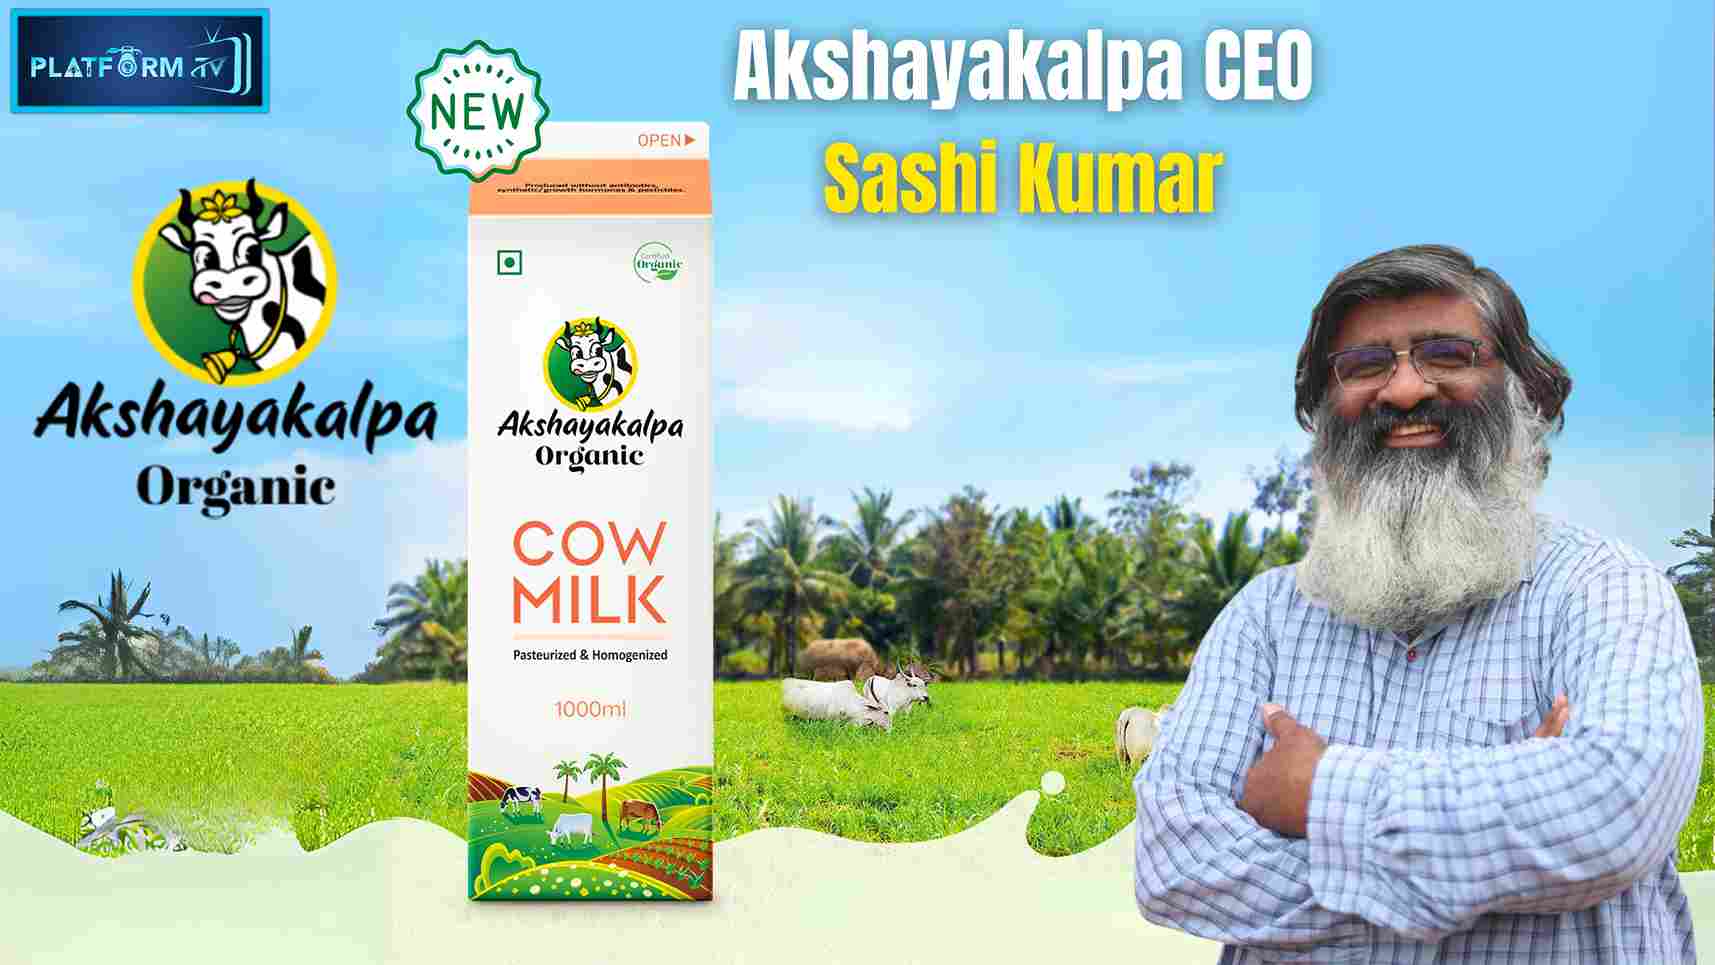 Akshayakalpa CEO Sashi Kumar - Platform Tamil